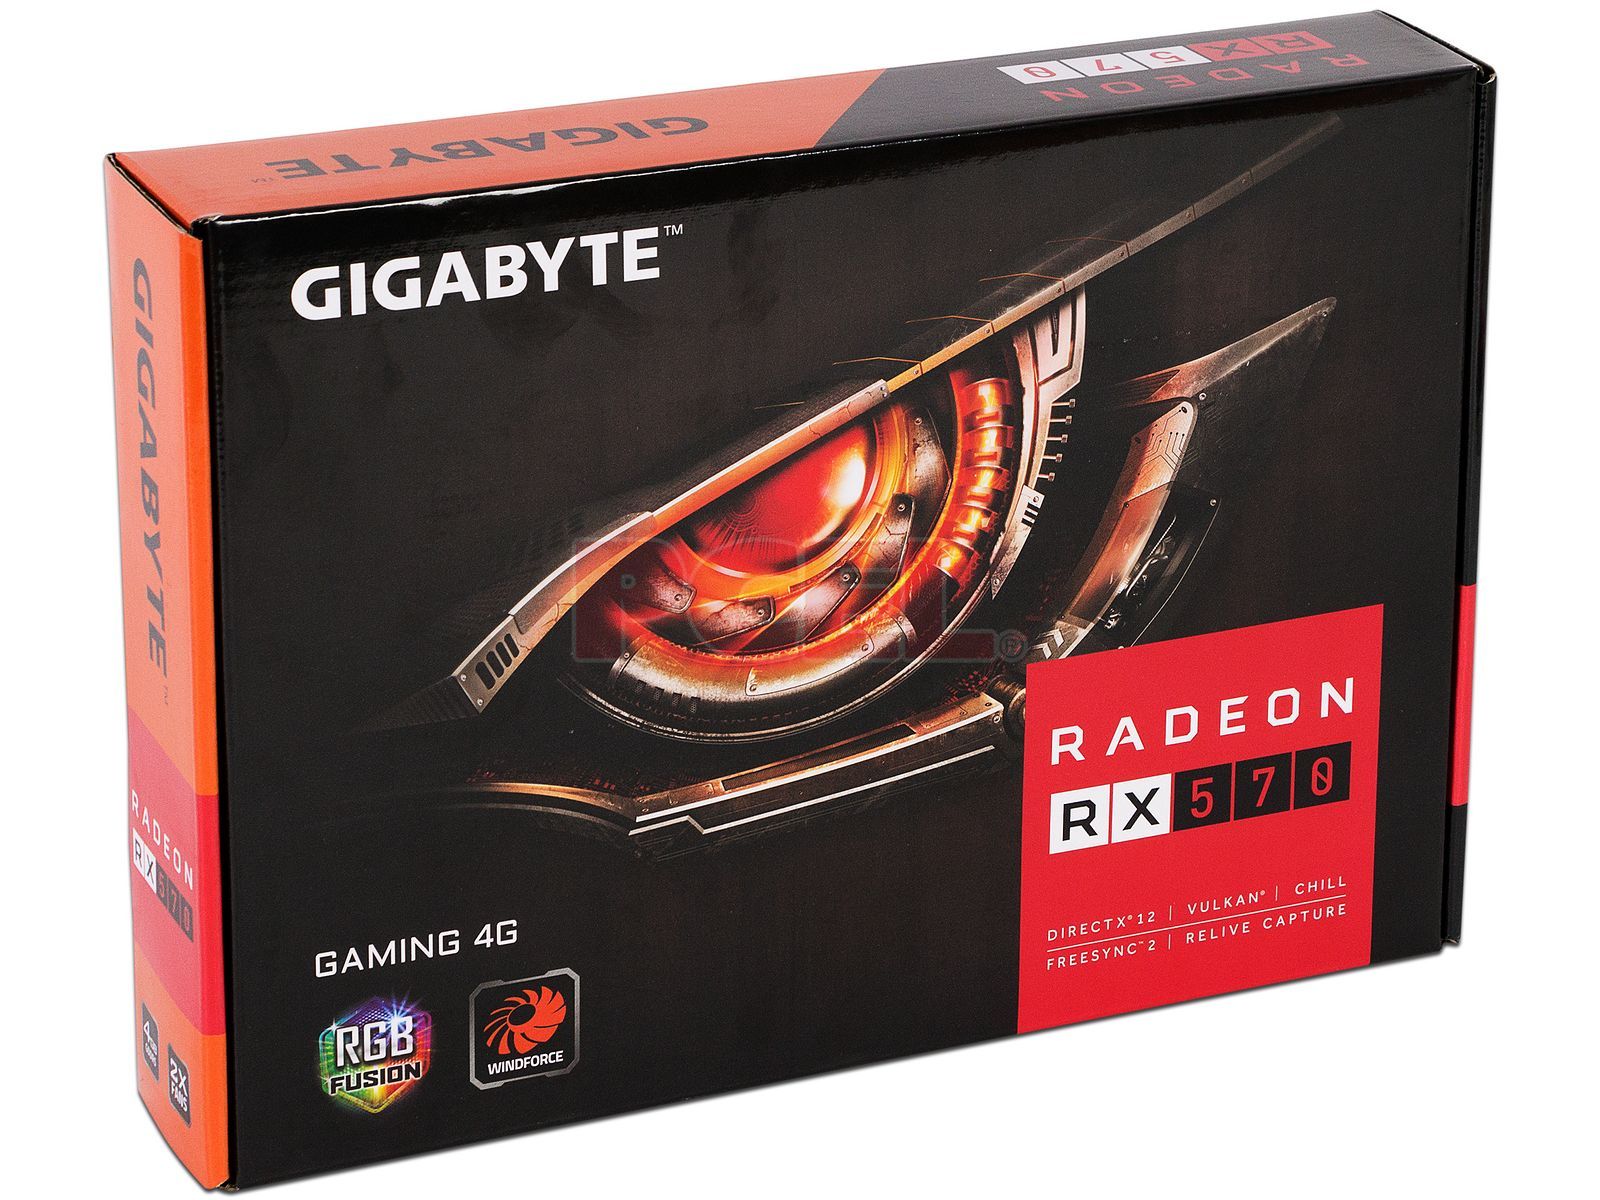 Gigabyte rx 570 gaming. RX 570 Gigabyte. Gigabyte AMD Radeon RX 570. Gigabyte RX 570 4gb Gaming. Gigabyte 570 подсветка видеокарта.